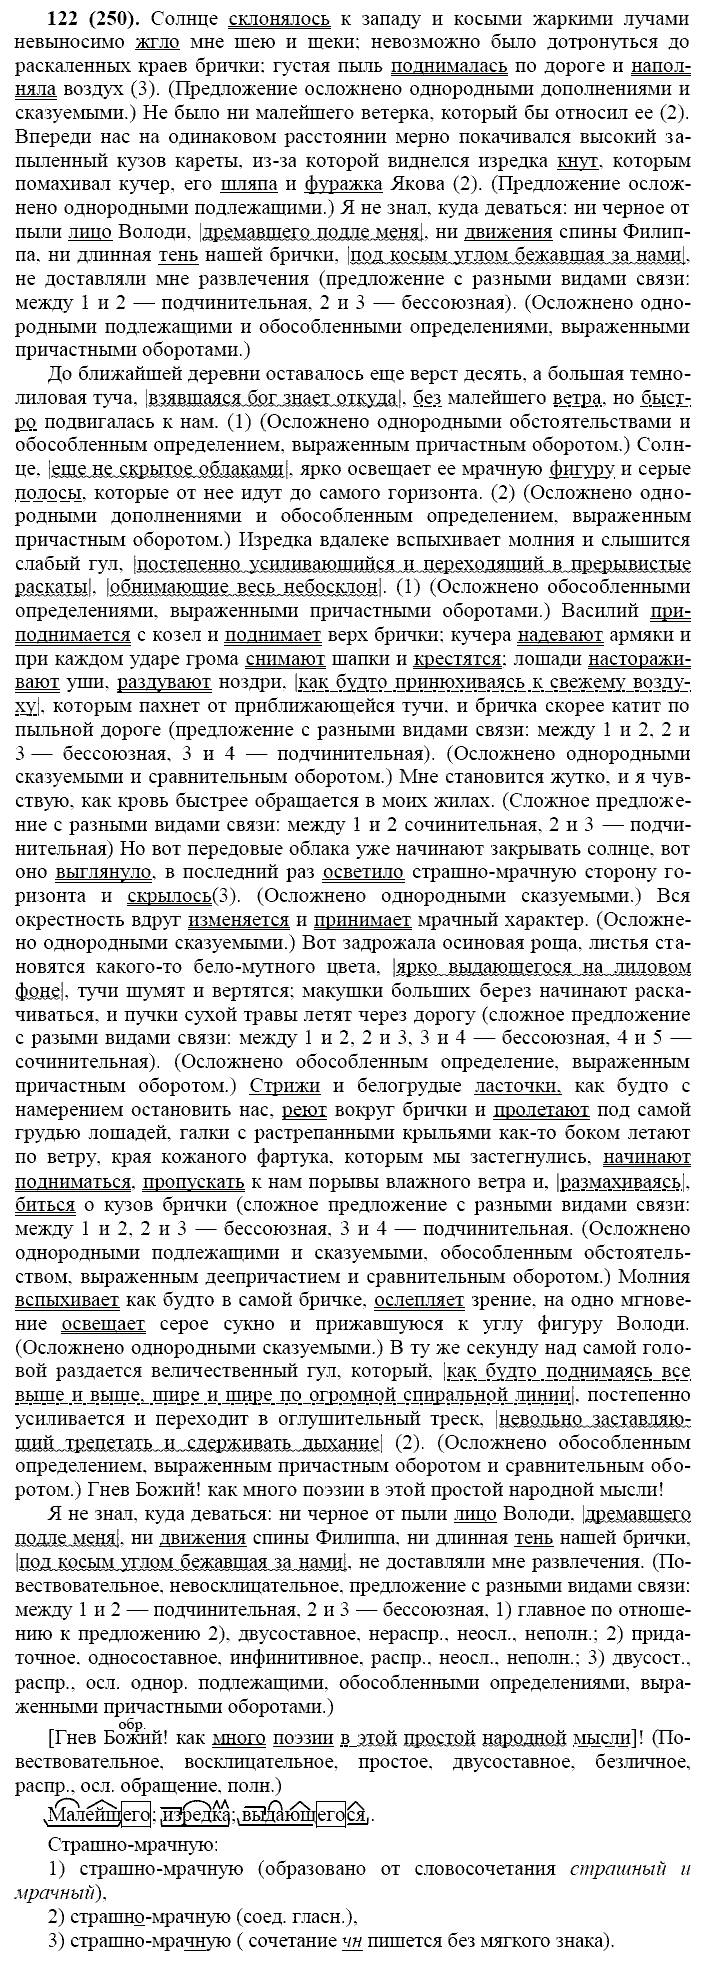 Русский язык, 11 класс, Власенков, Рыбченков, 2009-2014, задание: 122 (250)